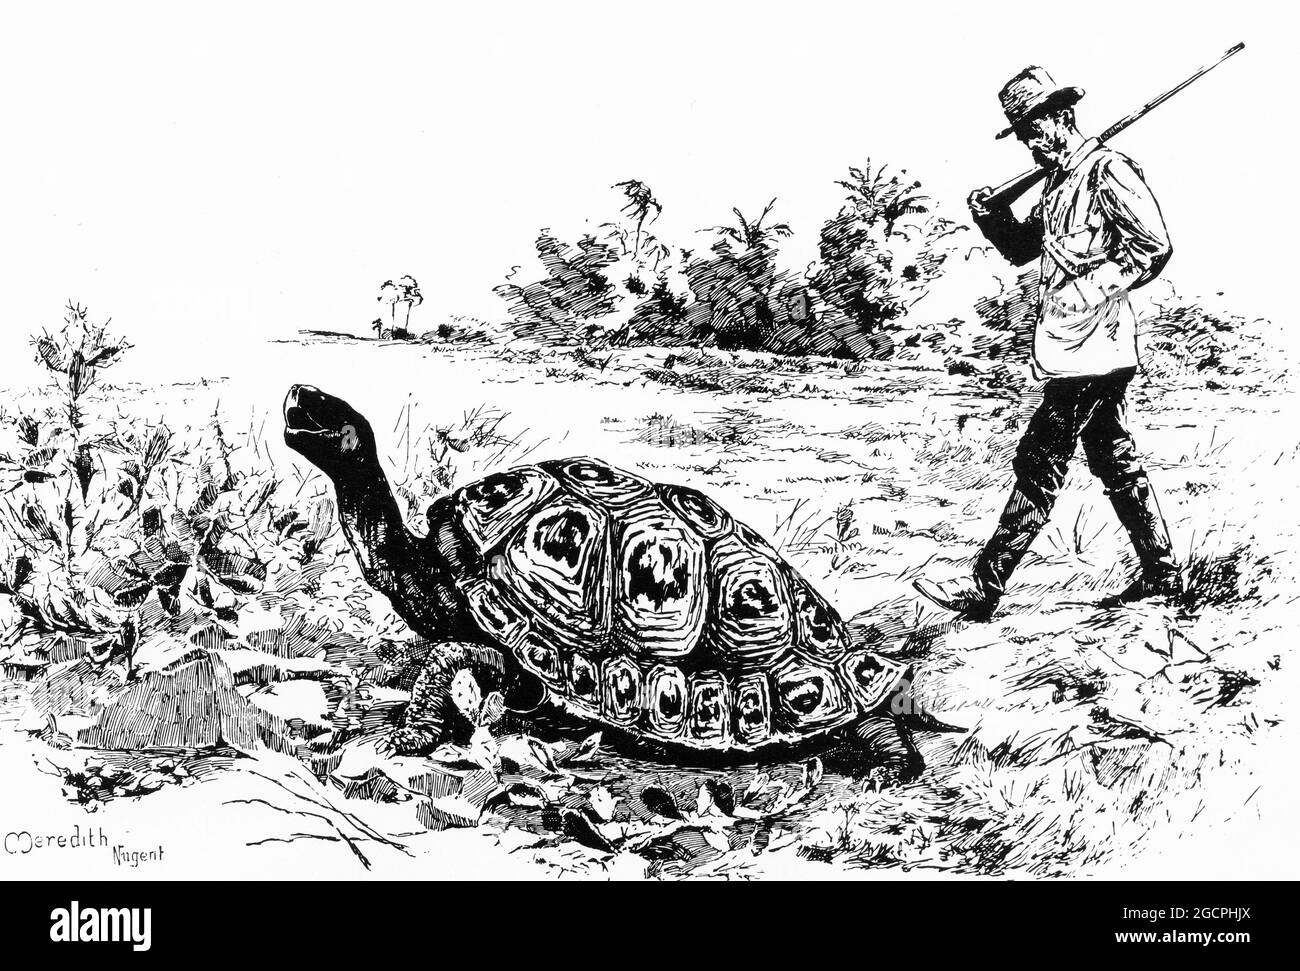 Gravur eines Mannes, der eine riesige Schildkröte auf den Galapagos-Inseln stacheln soll Stockfoto